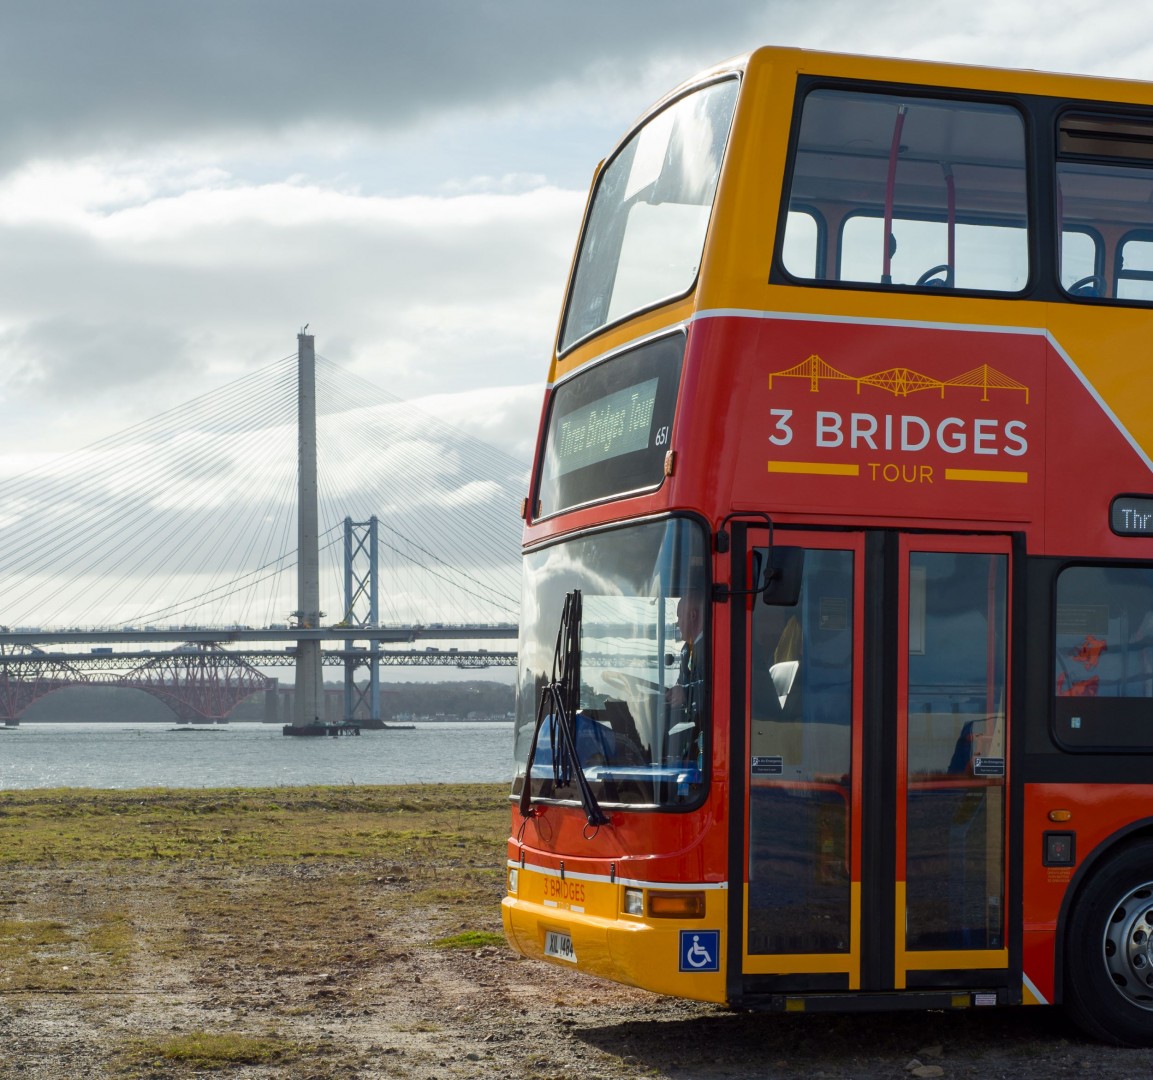 3 bridges bus tour